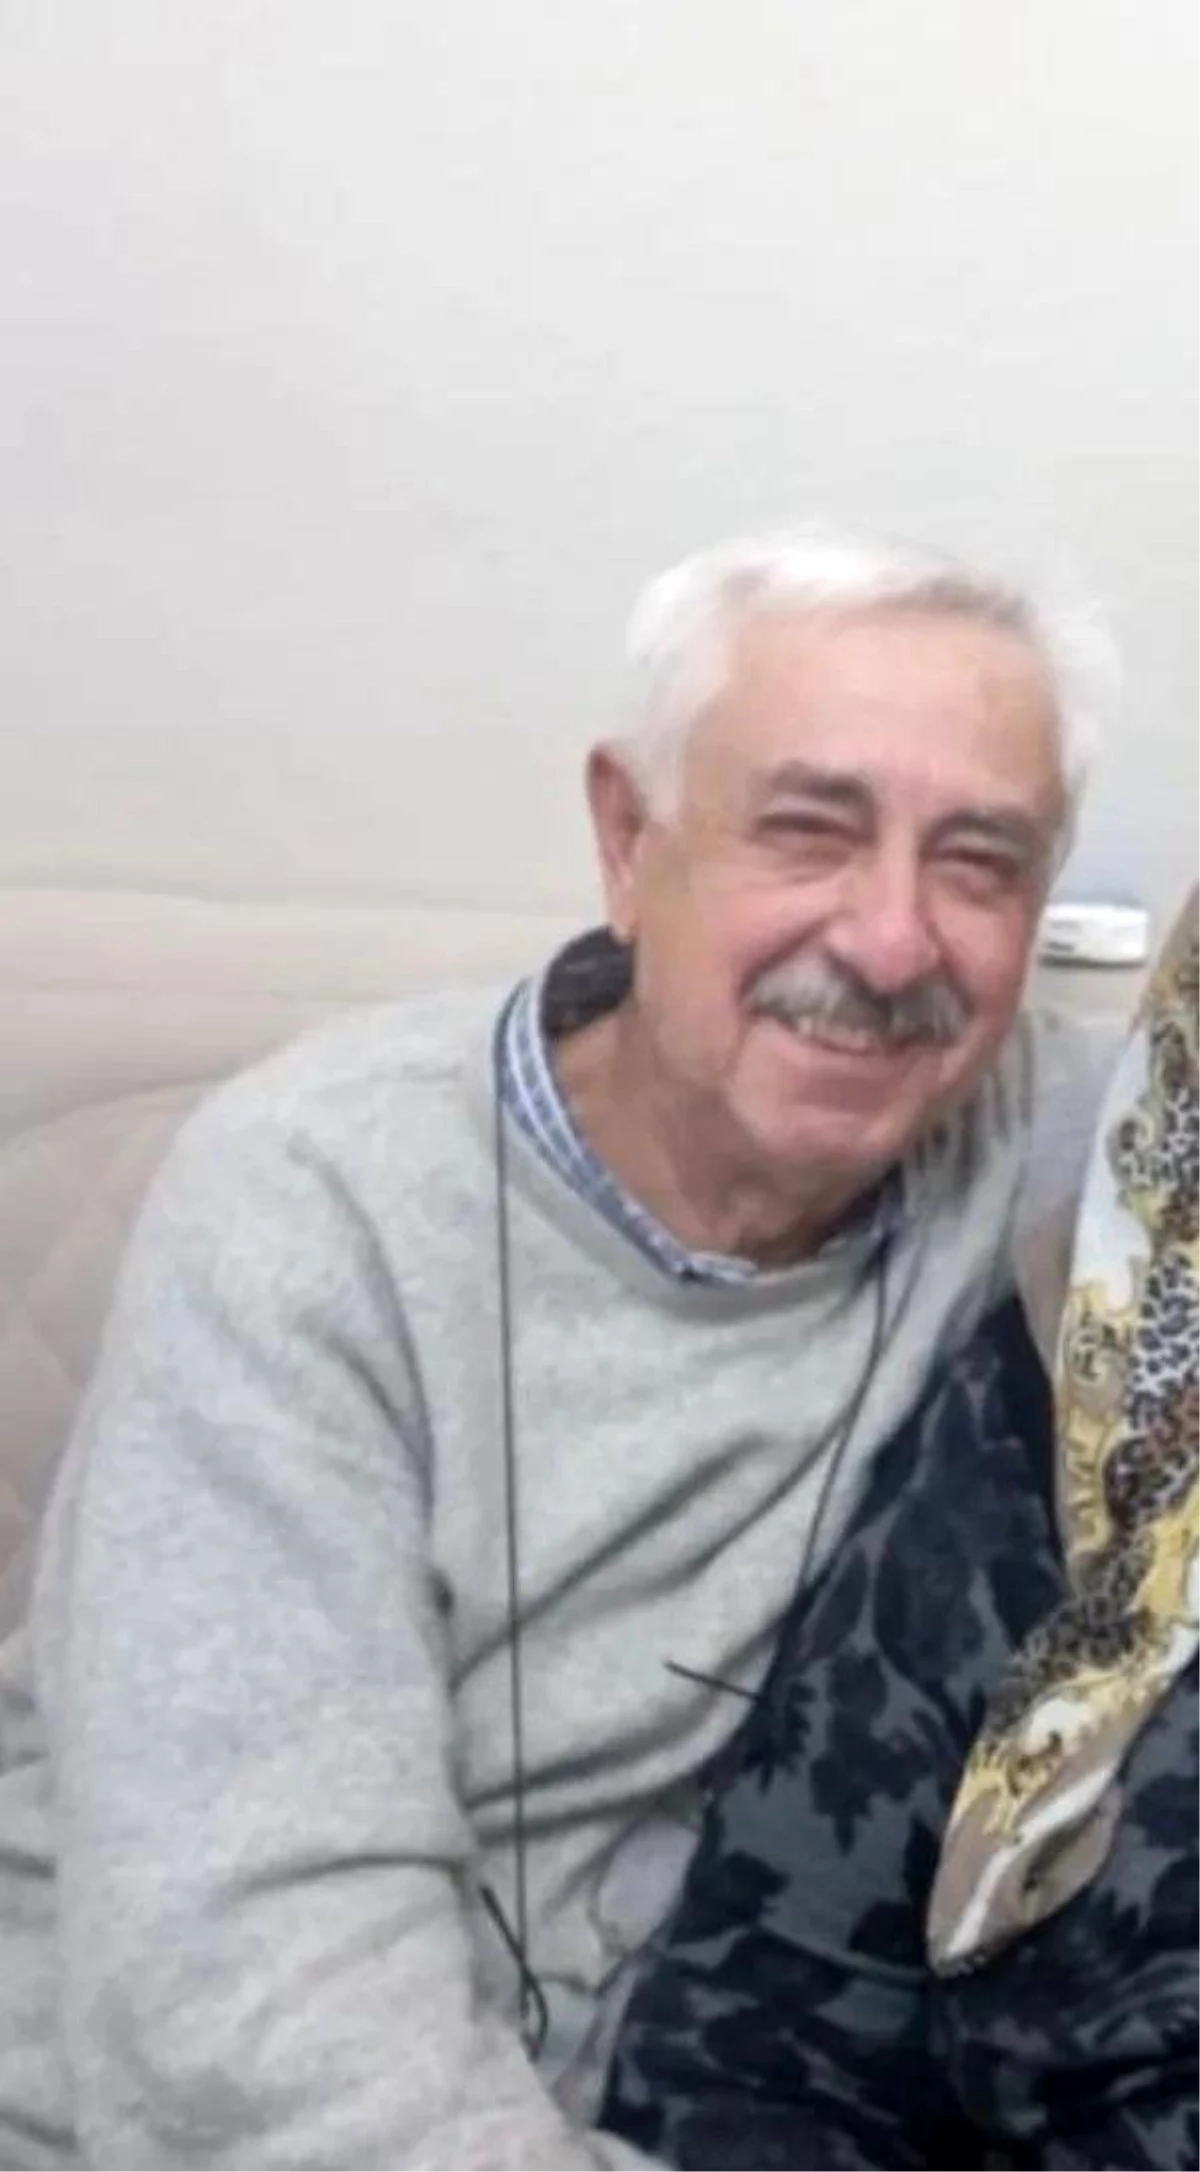 Kastamonu'da 75 yaşındaki vatandaş düşerek hayatını kaybetti